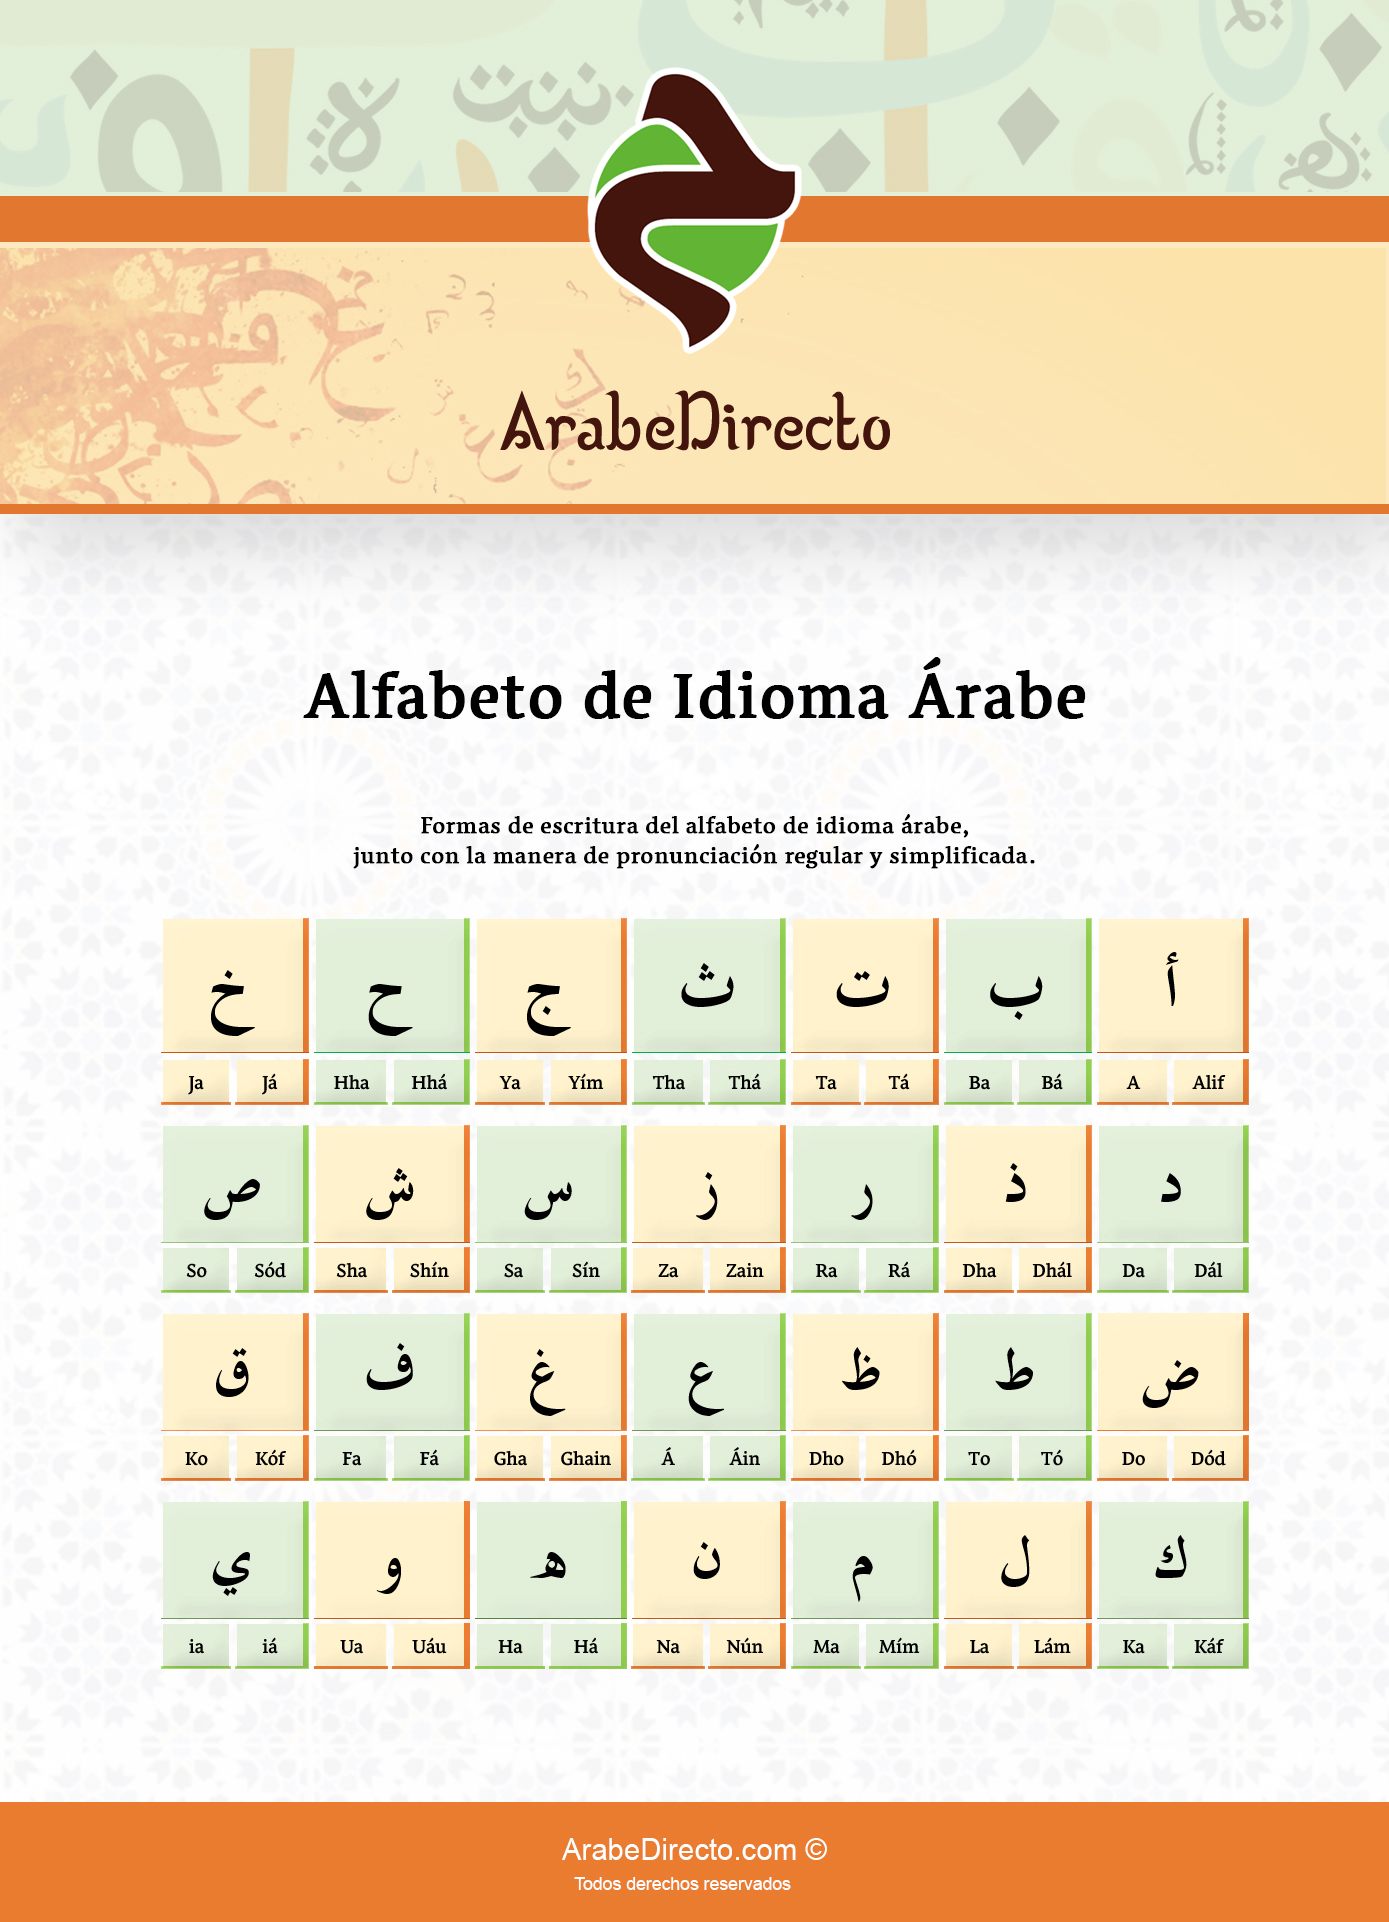 Infografía del alifato y alfabeto de idioma árabe y la pronunciación de las letras de la lengua árabe